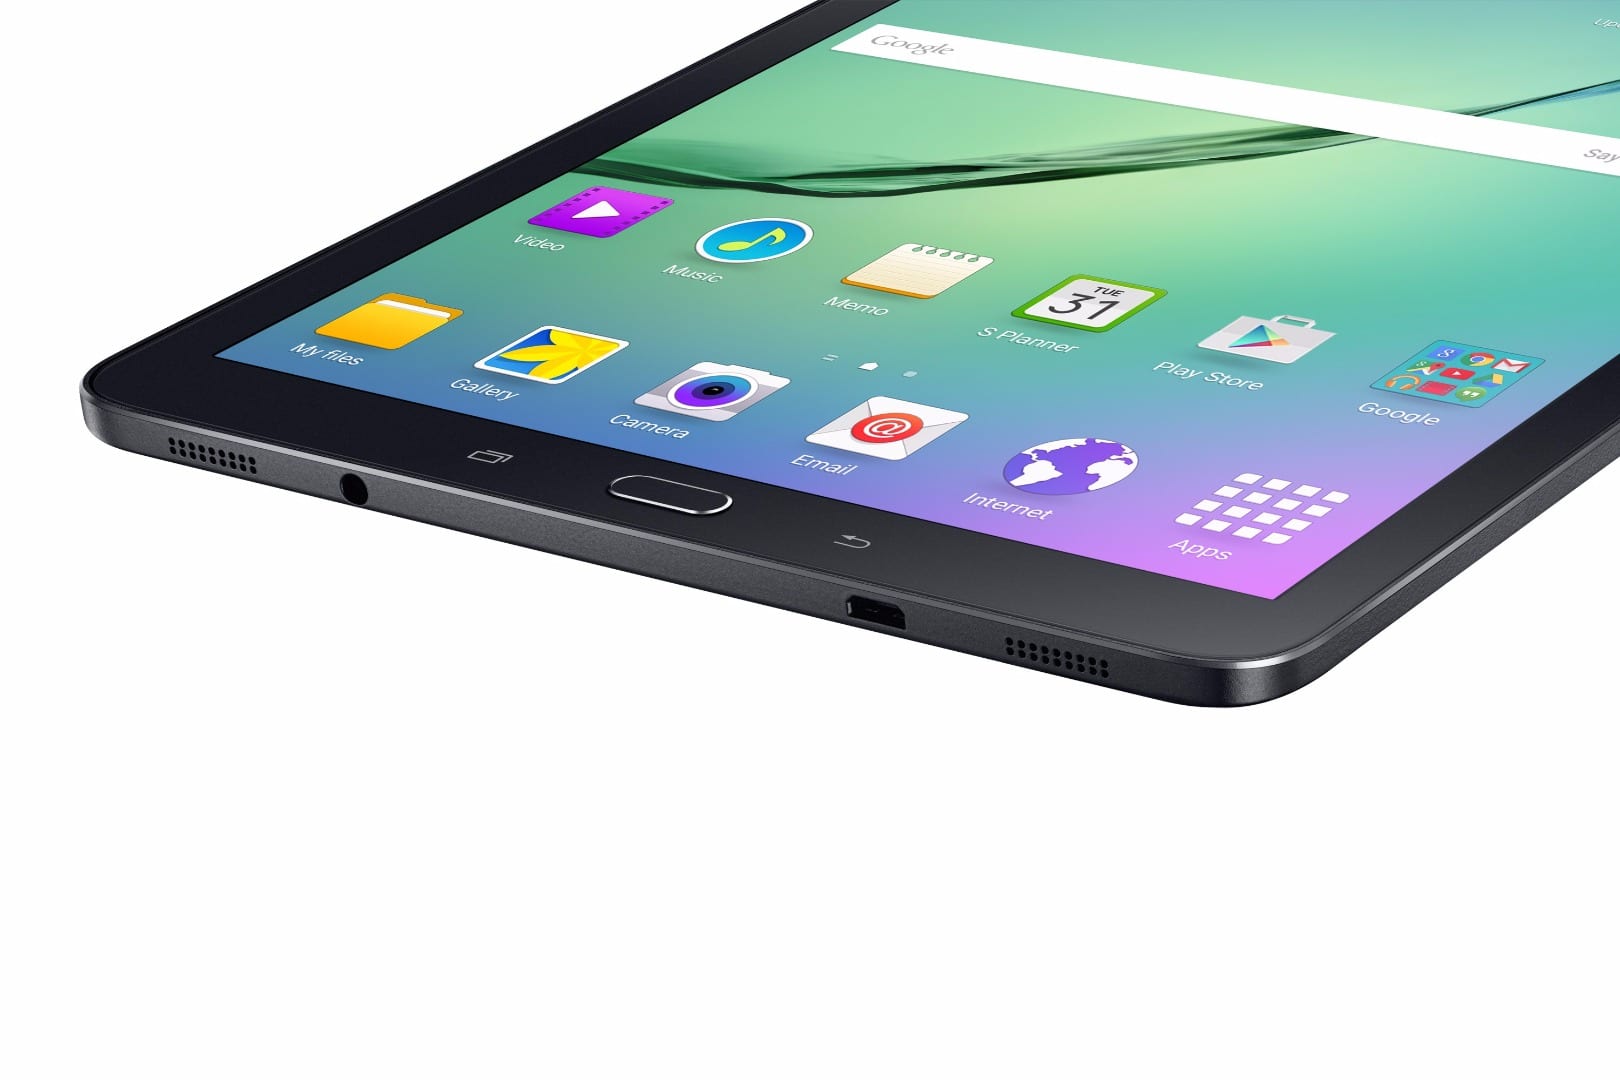 Samsung Galaxy Tab S2 tablet PC